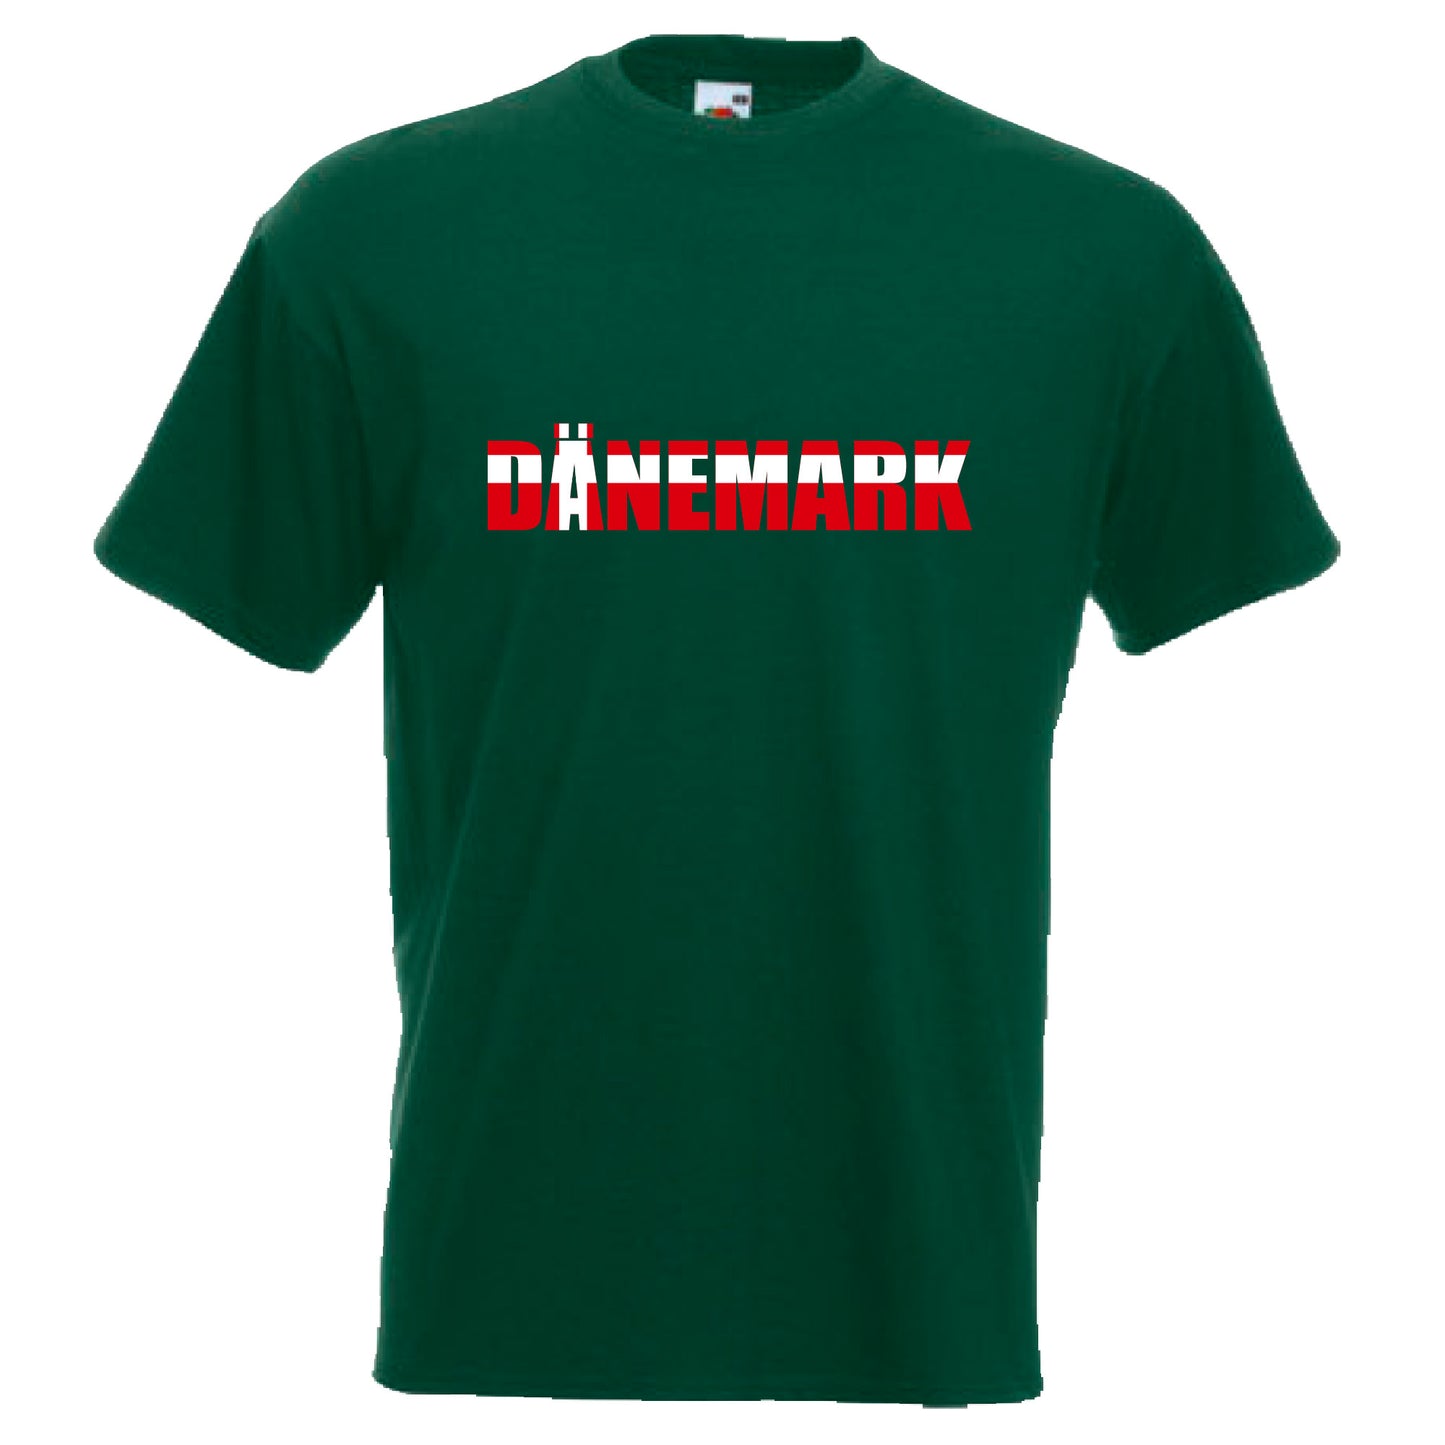 INDIGOS UG - T-Shirt Herren - Dänemark - Schriftzug - Fussball